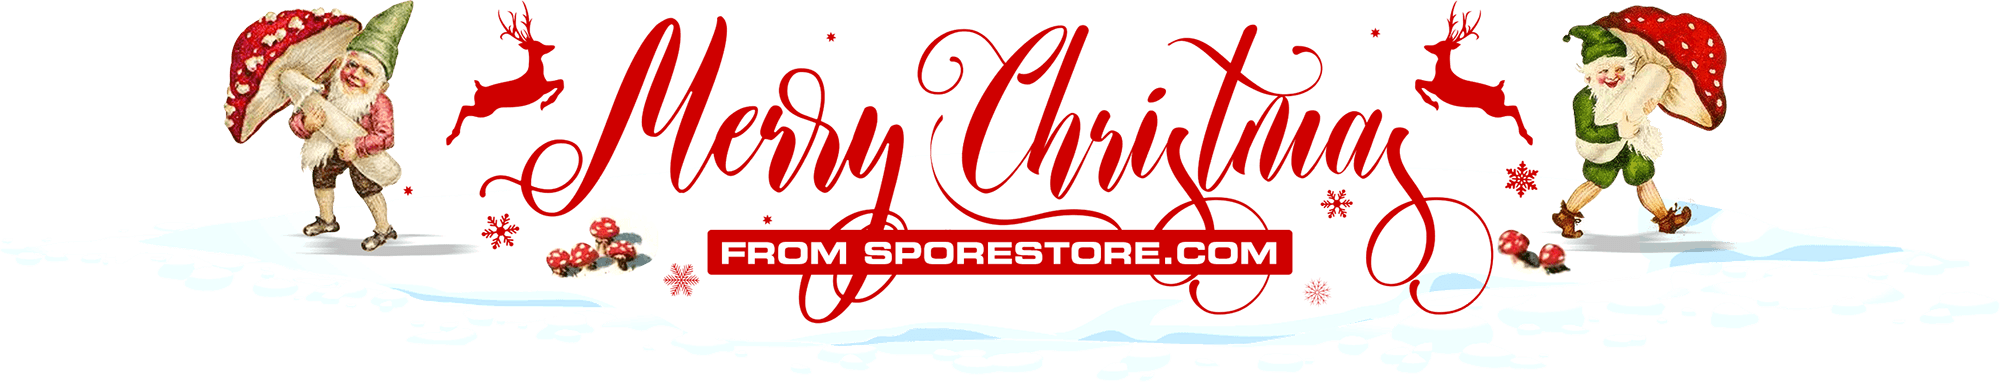 Merry Christmas from SporeStore.com!